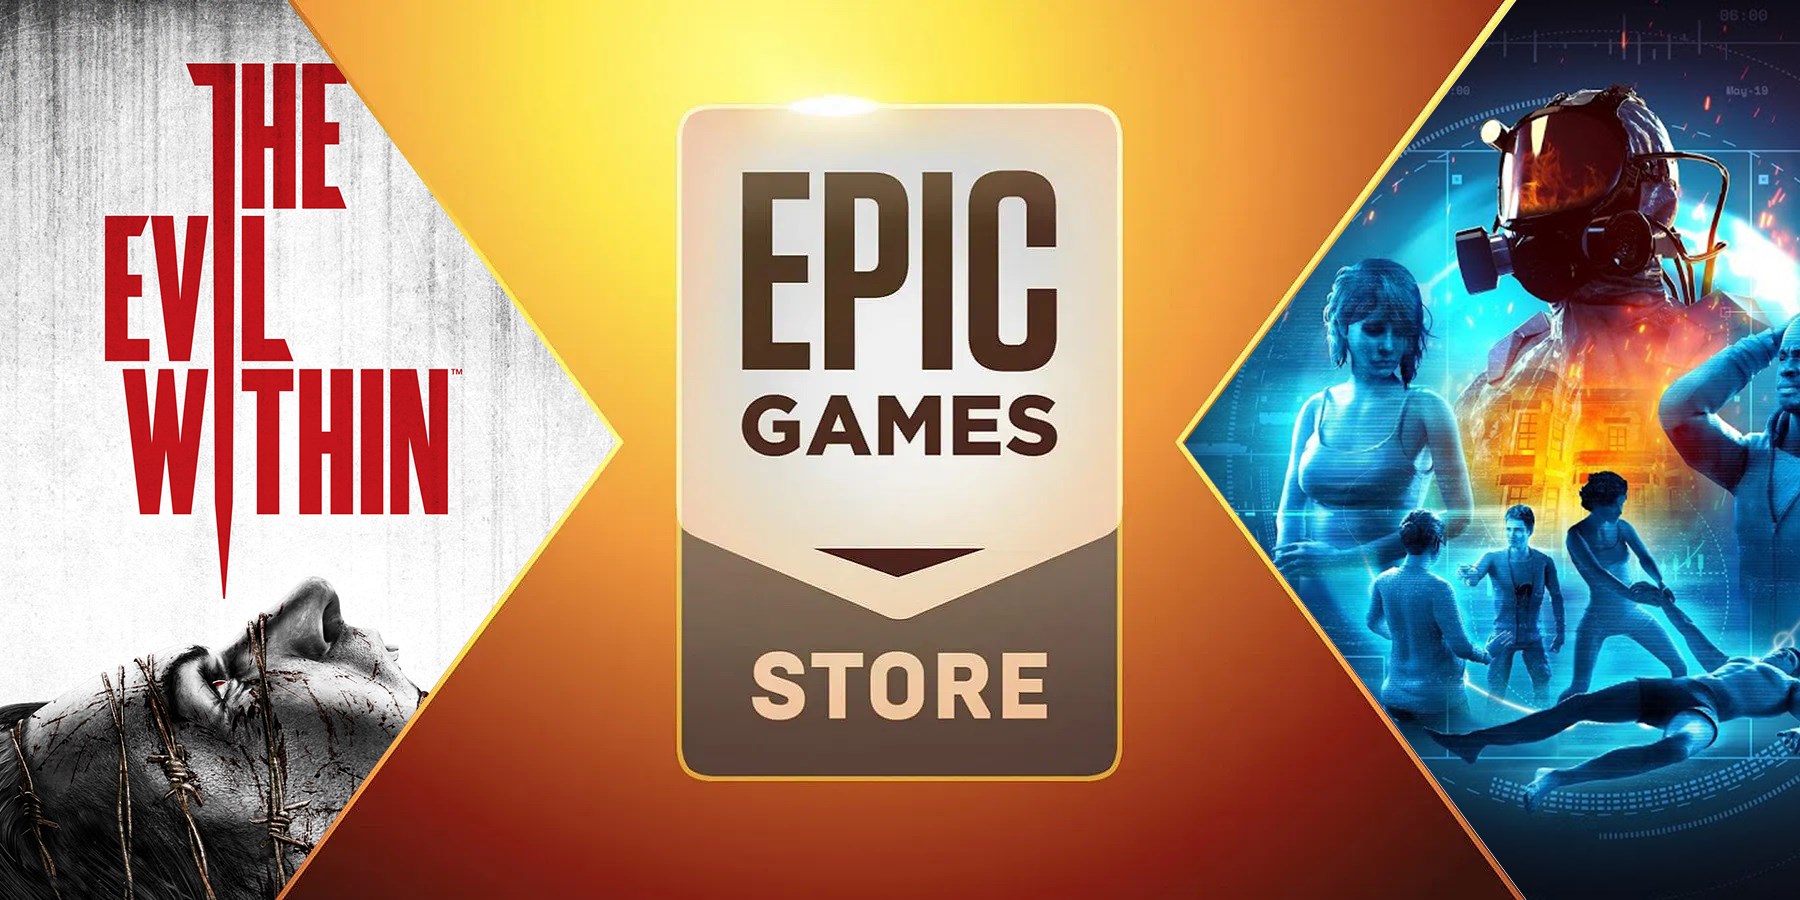 Epic Games'te iki yeni oyun ücretsiz olacak! 470 TL değerinde